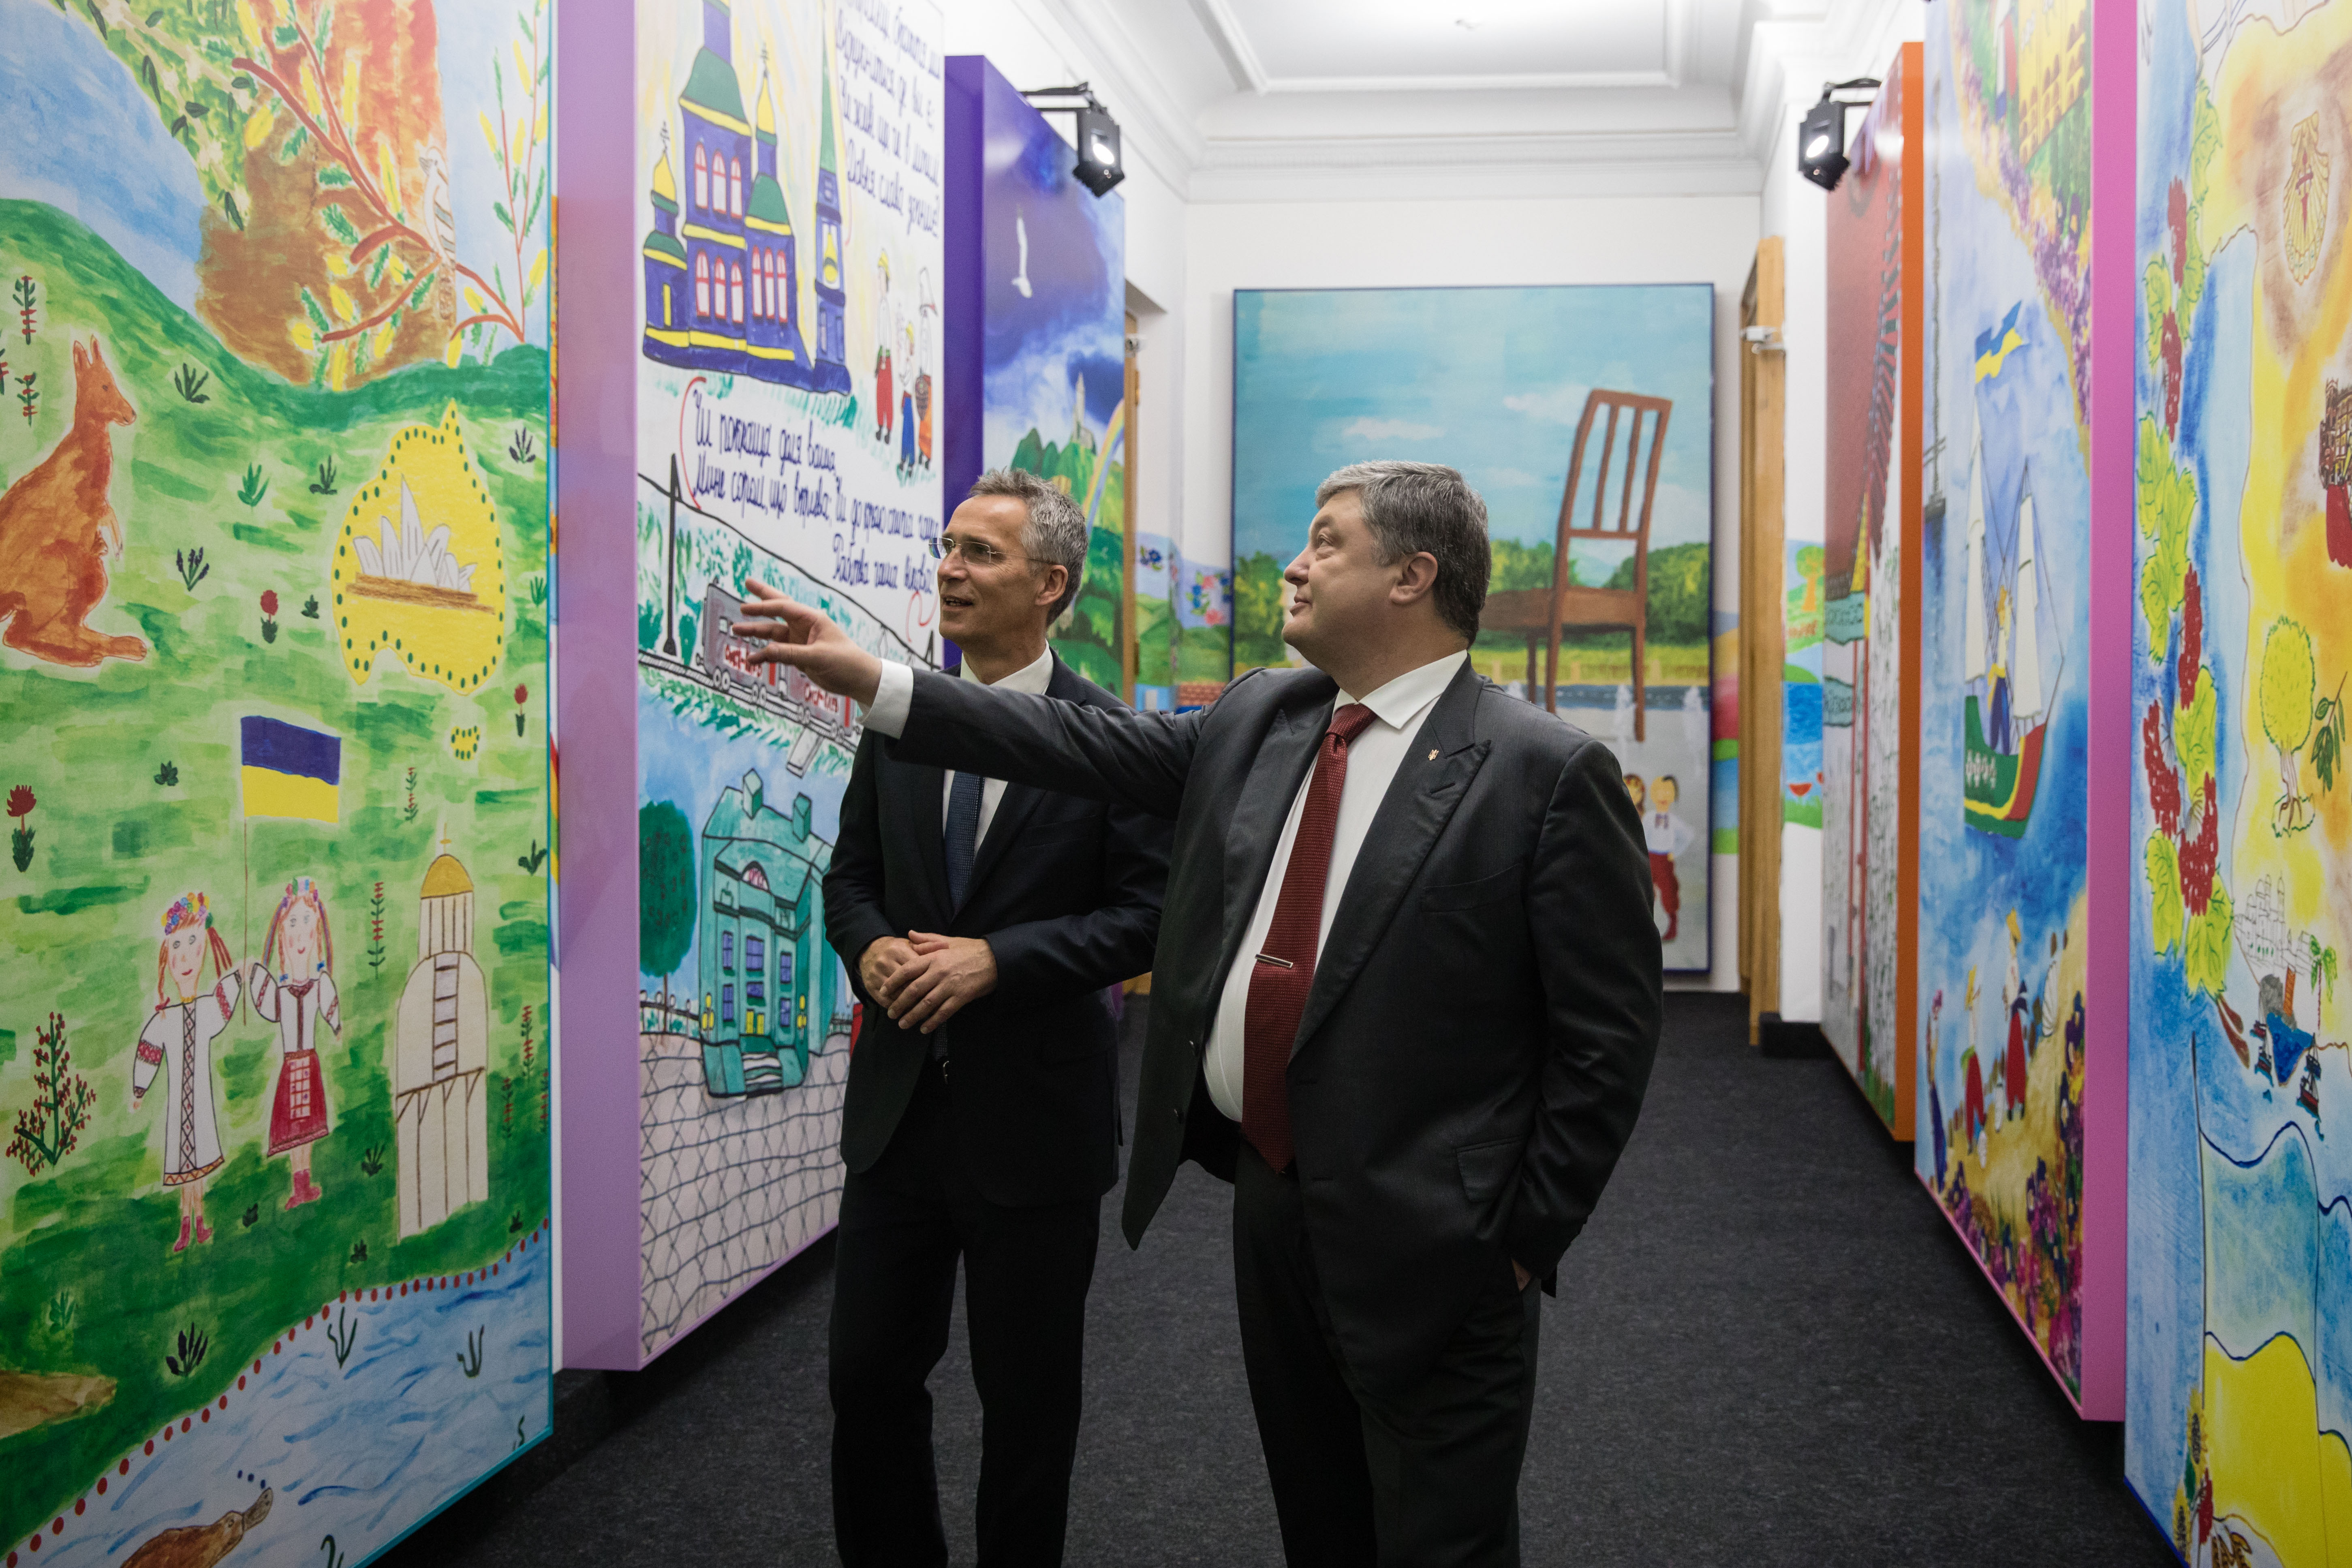 Програма перебування Єнса Столтенберга в Києві була доволі насиченою. Фото з сайту president.gov.ua